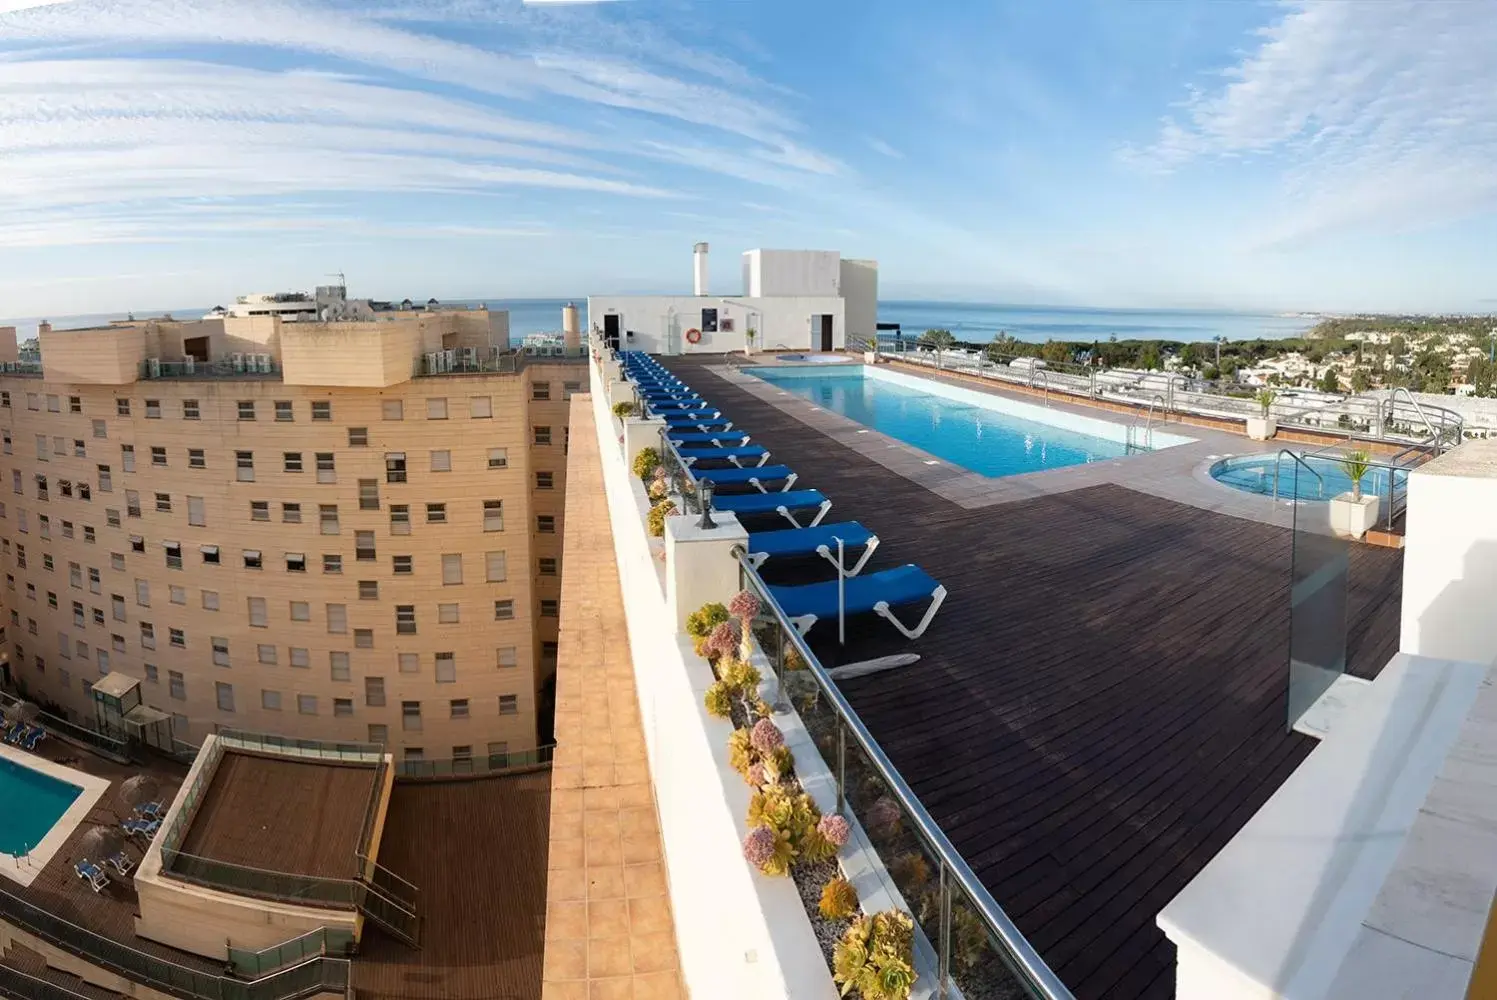 Area and facilities in Senator Marbella Spa Hotel